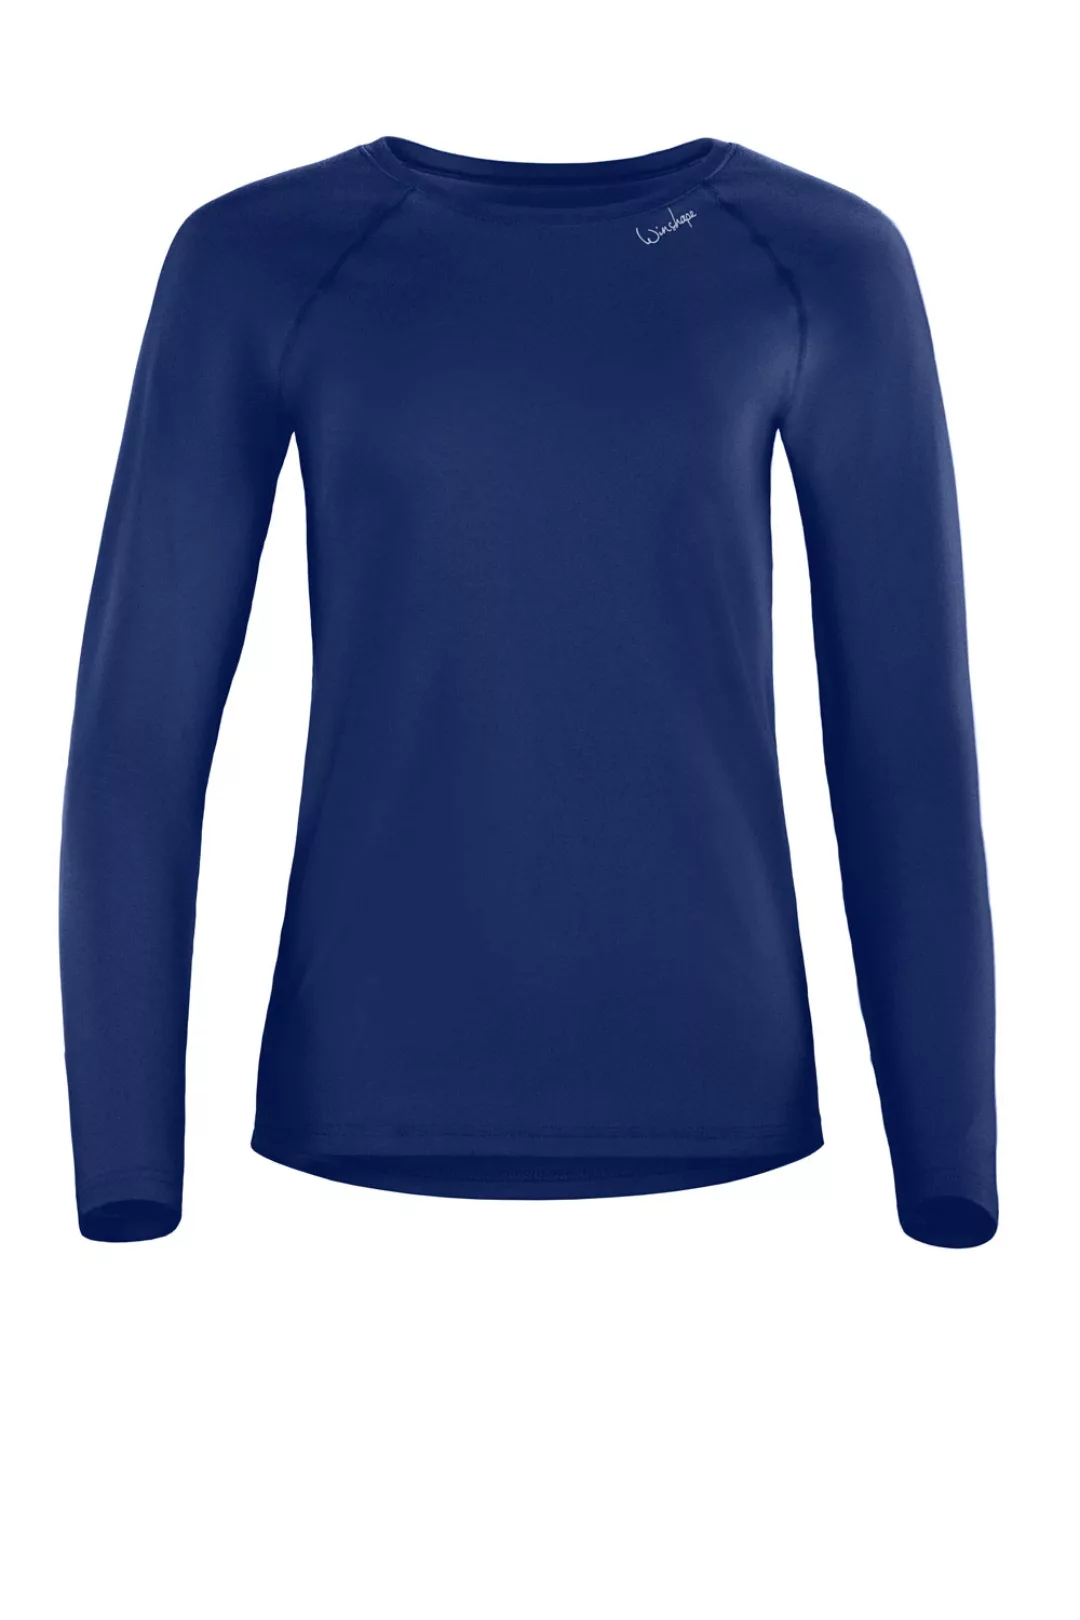 Winshape Langarmshirt "AET118LS", Functional Light and Soft Long Sleeve Top günstig online kaufen